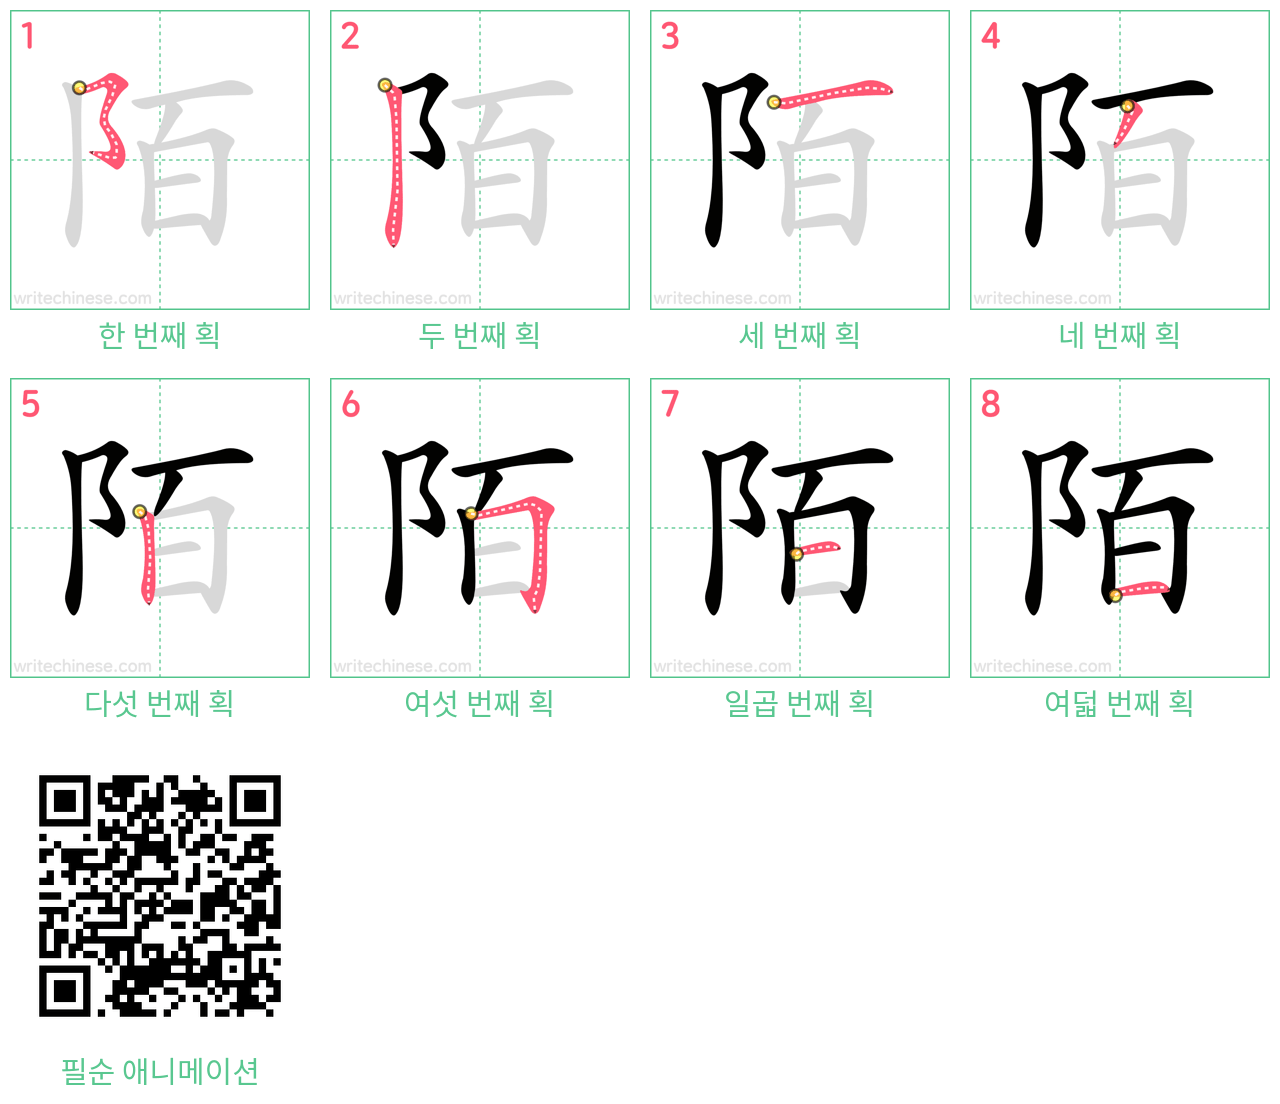 陌 step-by-step stroke order diagrams